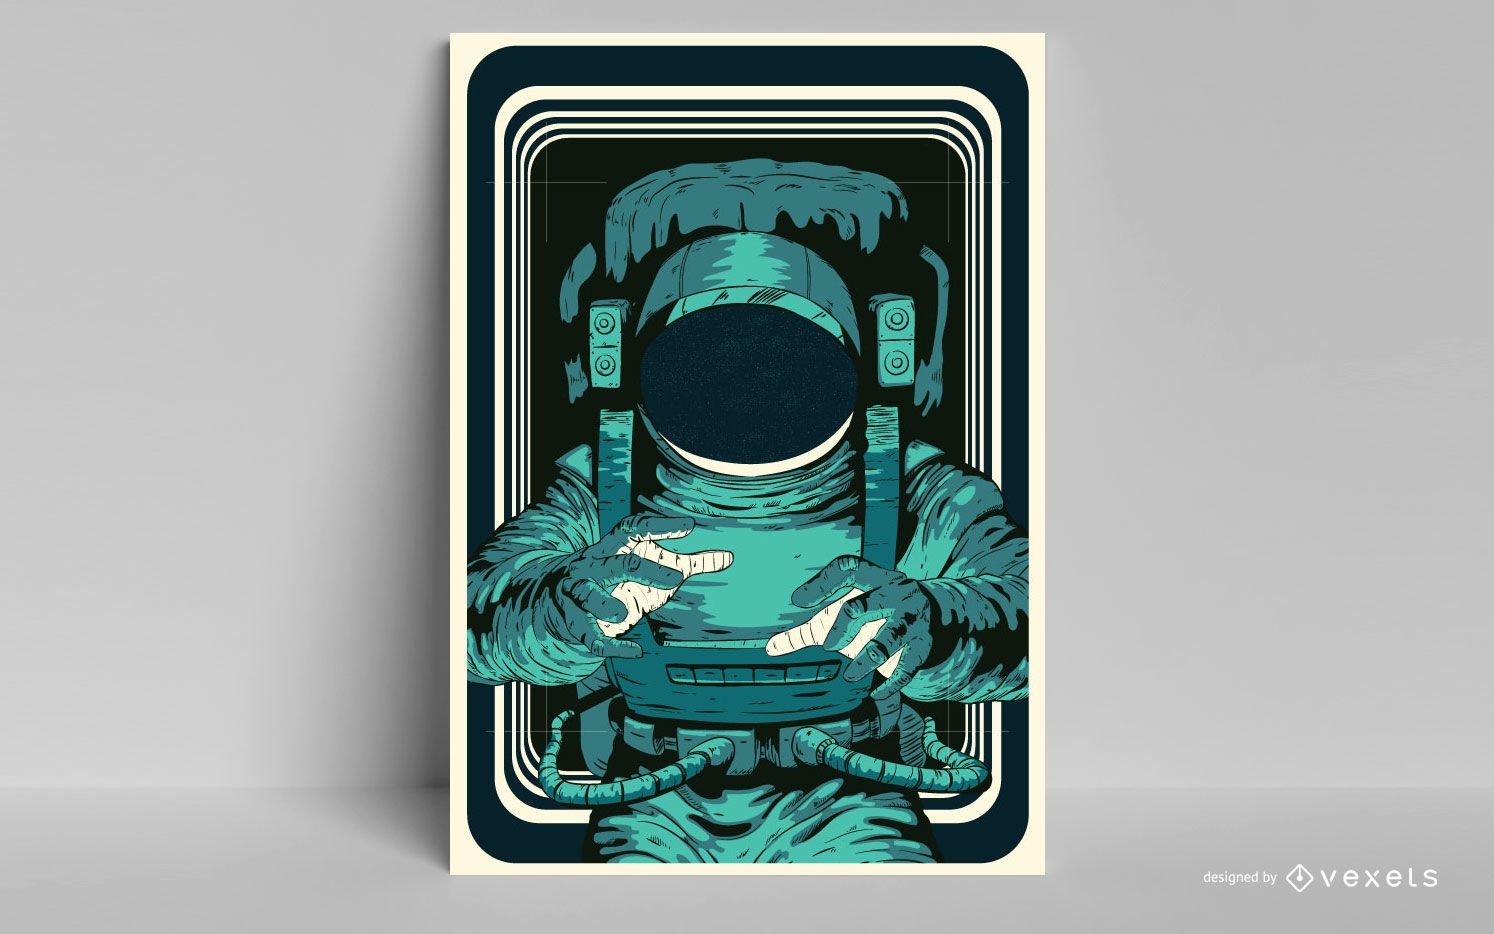 Astronaut poster design